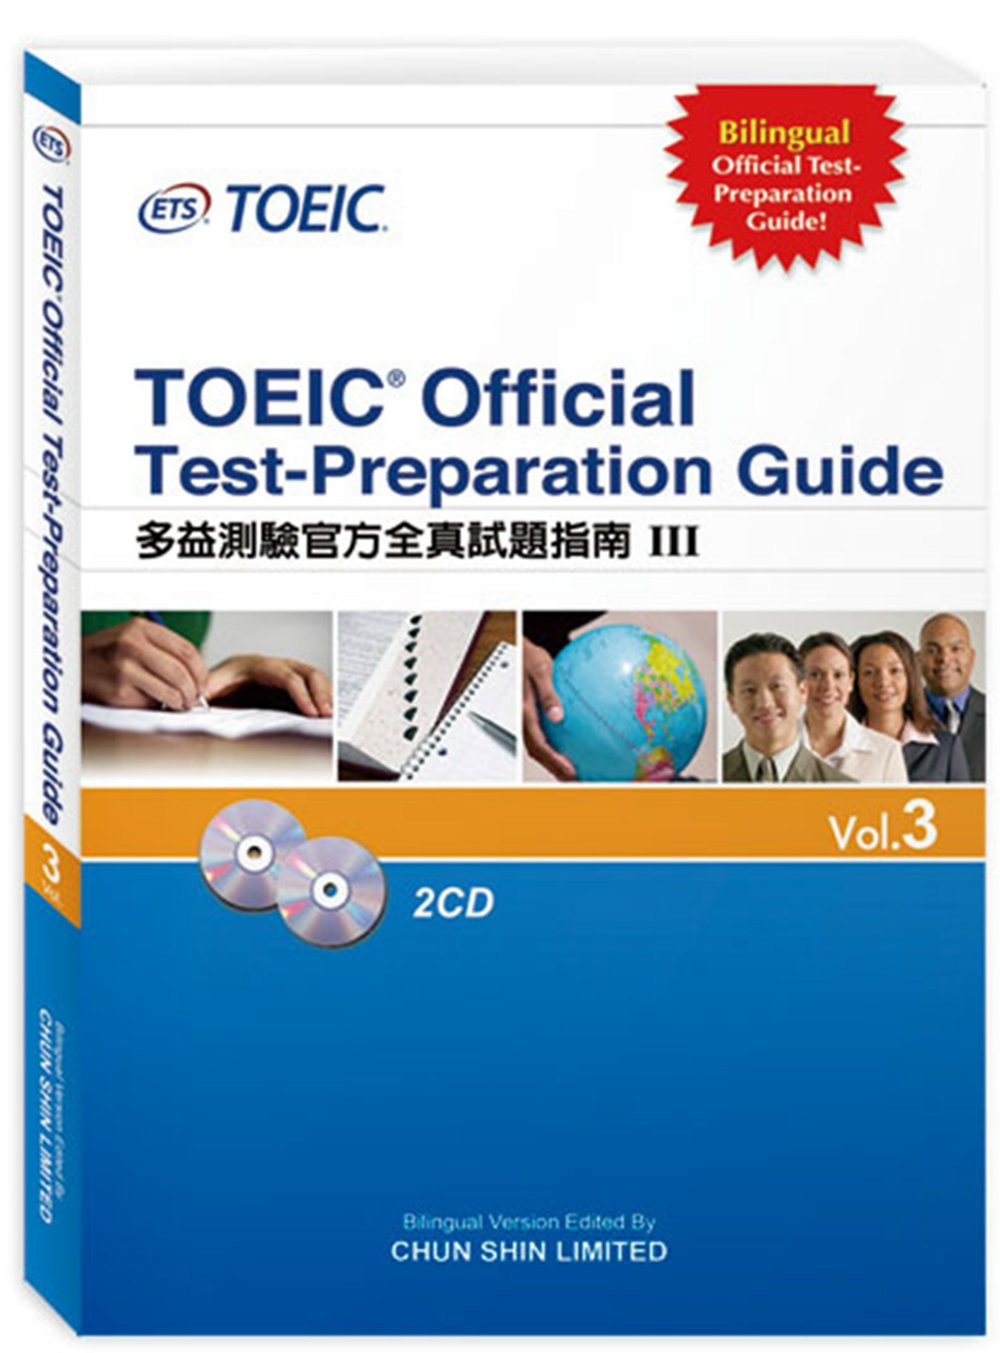 多益測驗官方全真試題指南Ⅲ TOEIC Official Test-Preparation Guide Vol.3（附2CD）